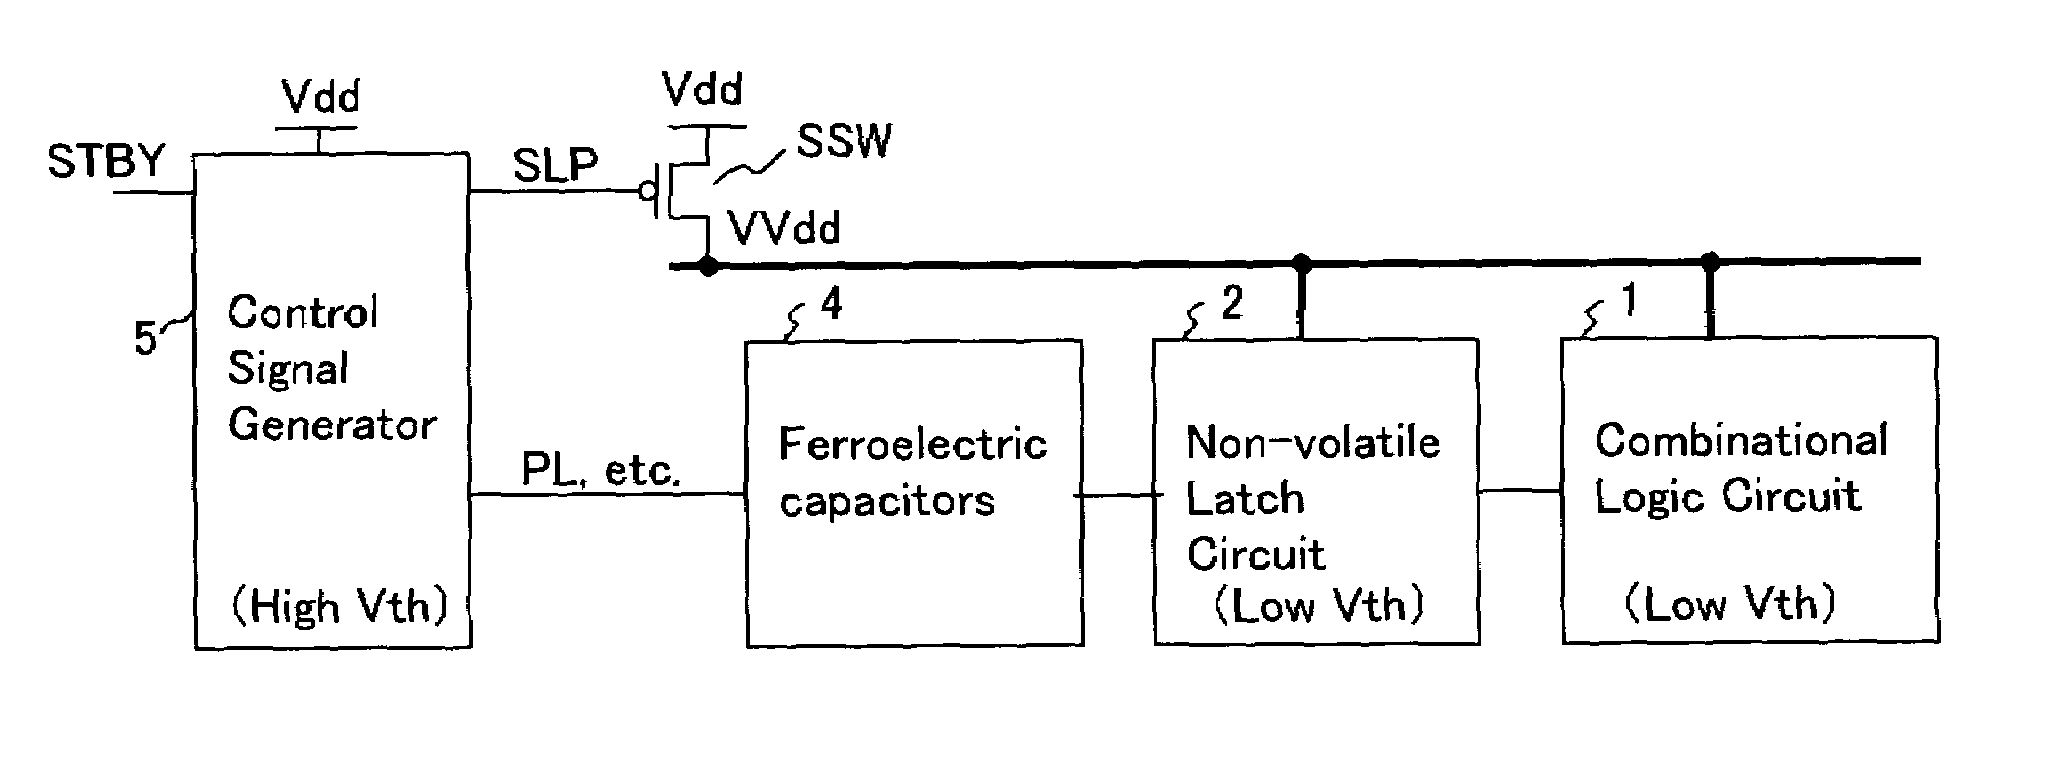 Multi-threshold-voltage integrated circuit having a non-volatile data storage circuit